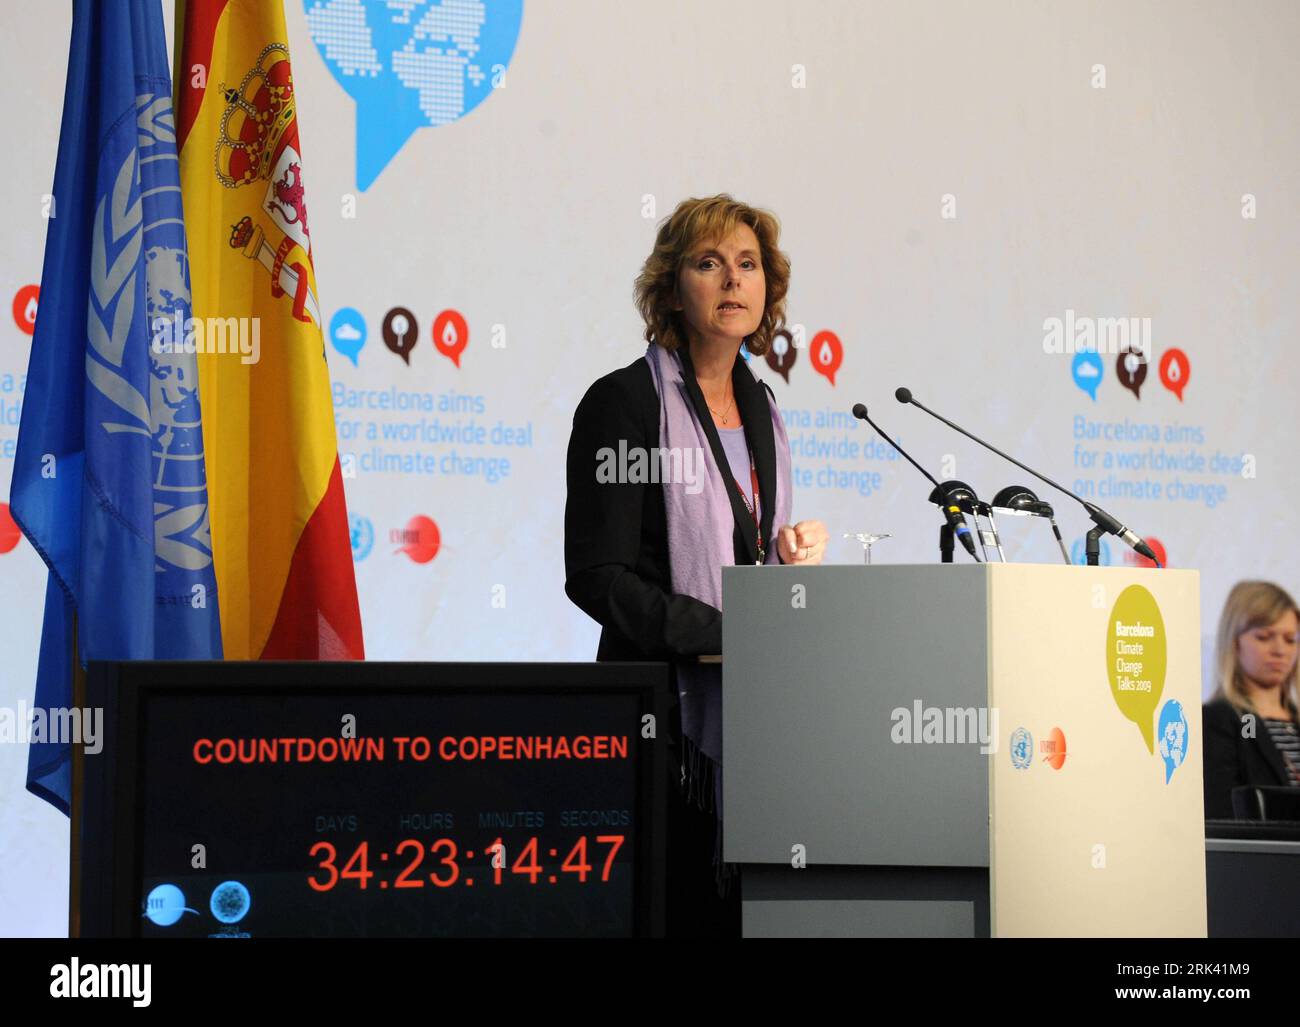 Bildnummer: 53569021 Datum: 02.11.2009 Copyright: imago/Xinhua Connie Hedegaard, Ministro per il clima e l'energia della Danimarca, affronta l'ultimo ciclo di colloqui ONU sul cambiamento climatico a Barcellona, Spagna, 2 novembre 2009. La riunione è la quinta e anche l'ultima sessione delle Nazioni Unite quest'anno prima della conferenza sul cambiamento climatico di dicembre a Copenaghen, con il compito di concludere un nuovo accordo sul cambiamento climatico per sostituire il protocollo di Kyoto, l'accordo vincolante esistente per combattere il cambiamento climatico che scade nel 2012. (Xinhua/Chen Haitong) (zhs) (3)SPAGNA-BARCELLONA-ONU COLLOQUI SUL CAMBIAMENTO CLIMATICO - DARE IL VIA A PUBLICATIONXNOTXINXCHN UN KL Foto Stock